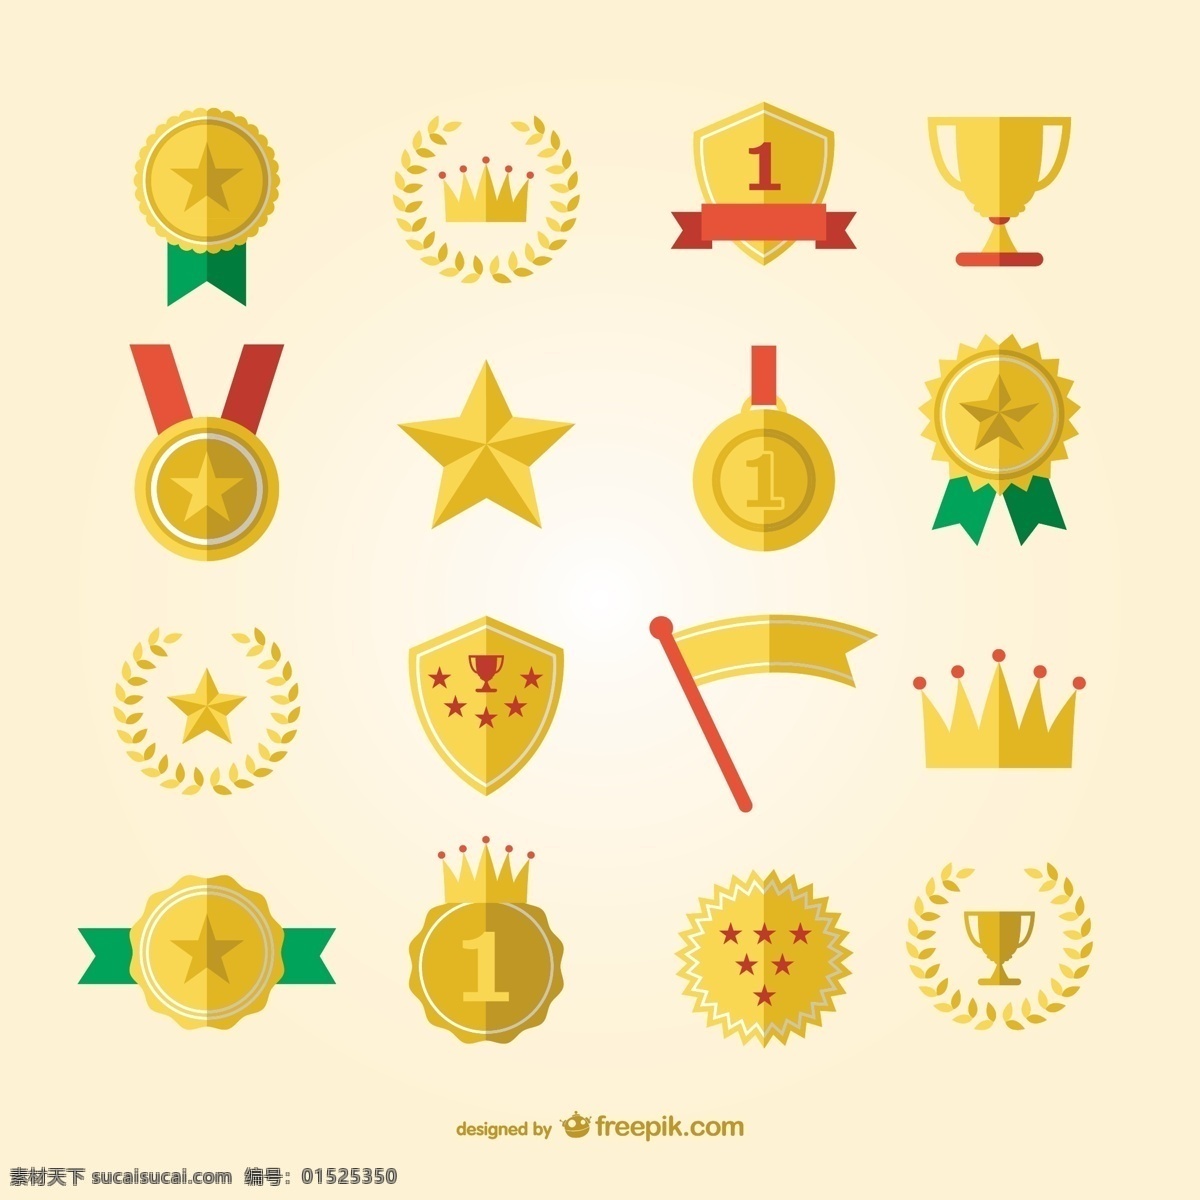 体育 奖 奖牌 集 图标 星 冠 黄金 徽章 足球 标志 模板 平面 运动 图形 布局 游戏 图形设计 白色